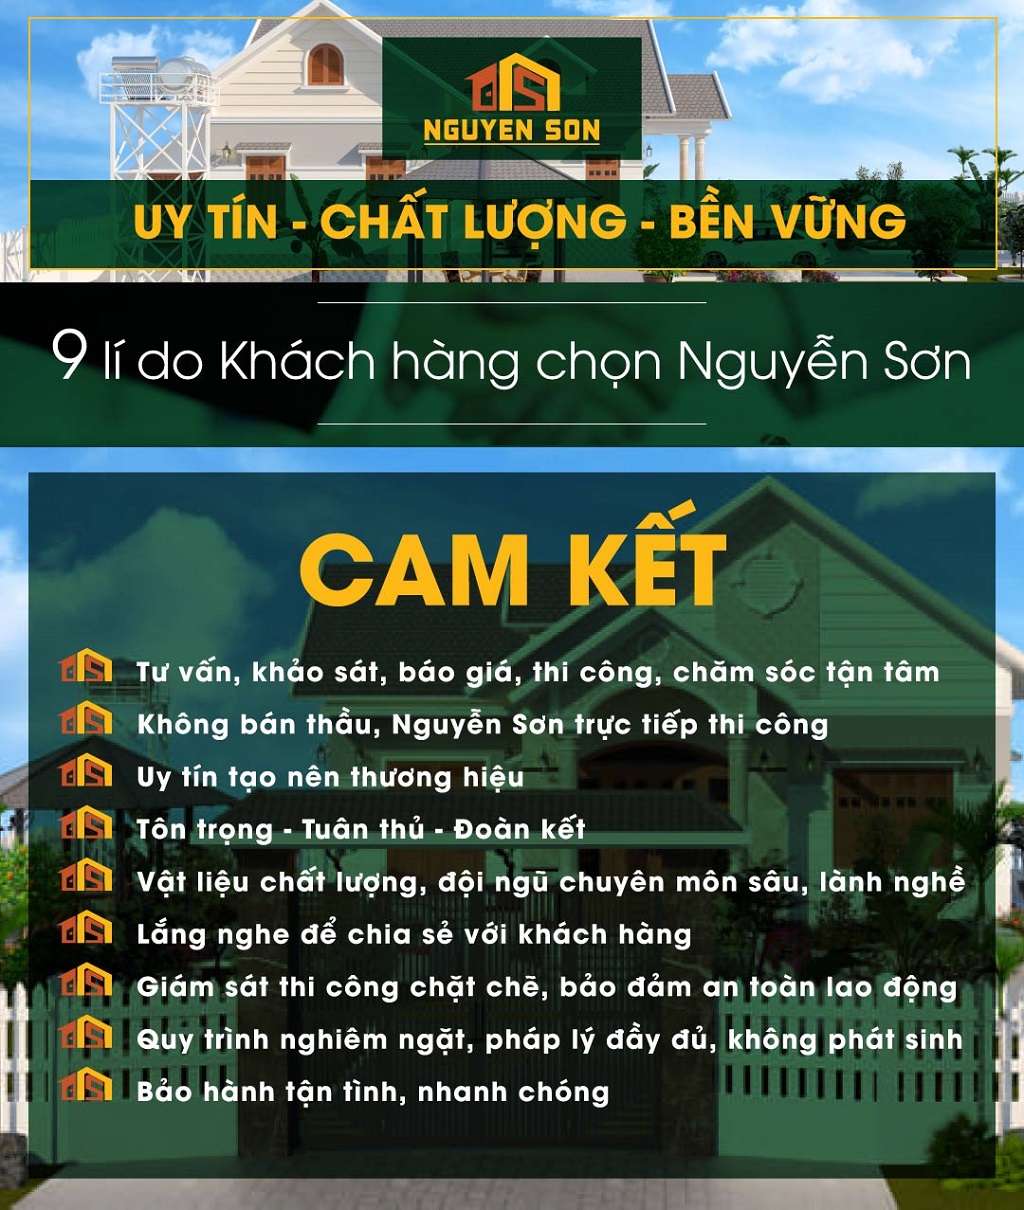 Cam kết của Xây Dựng Nguyễn Sơn